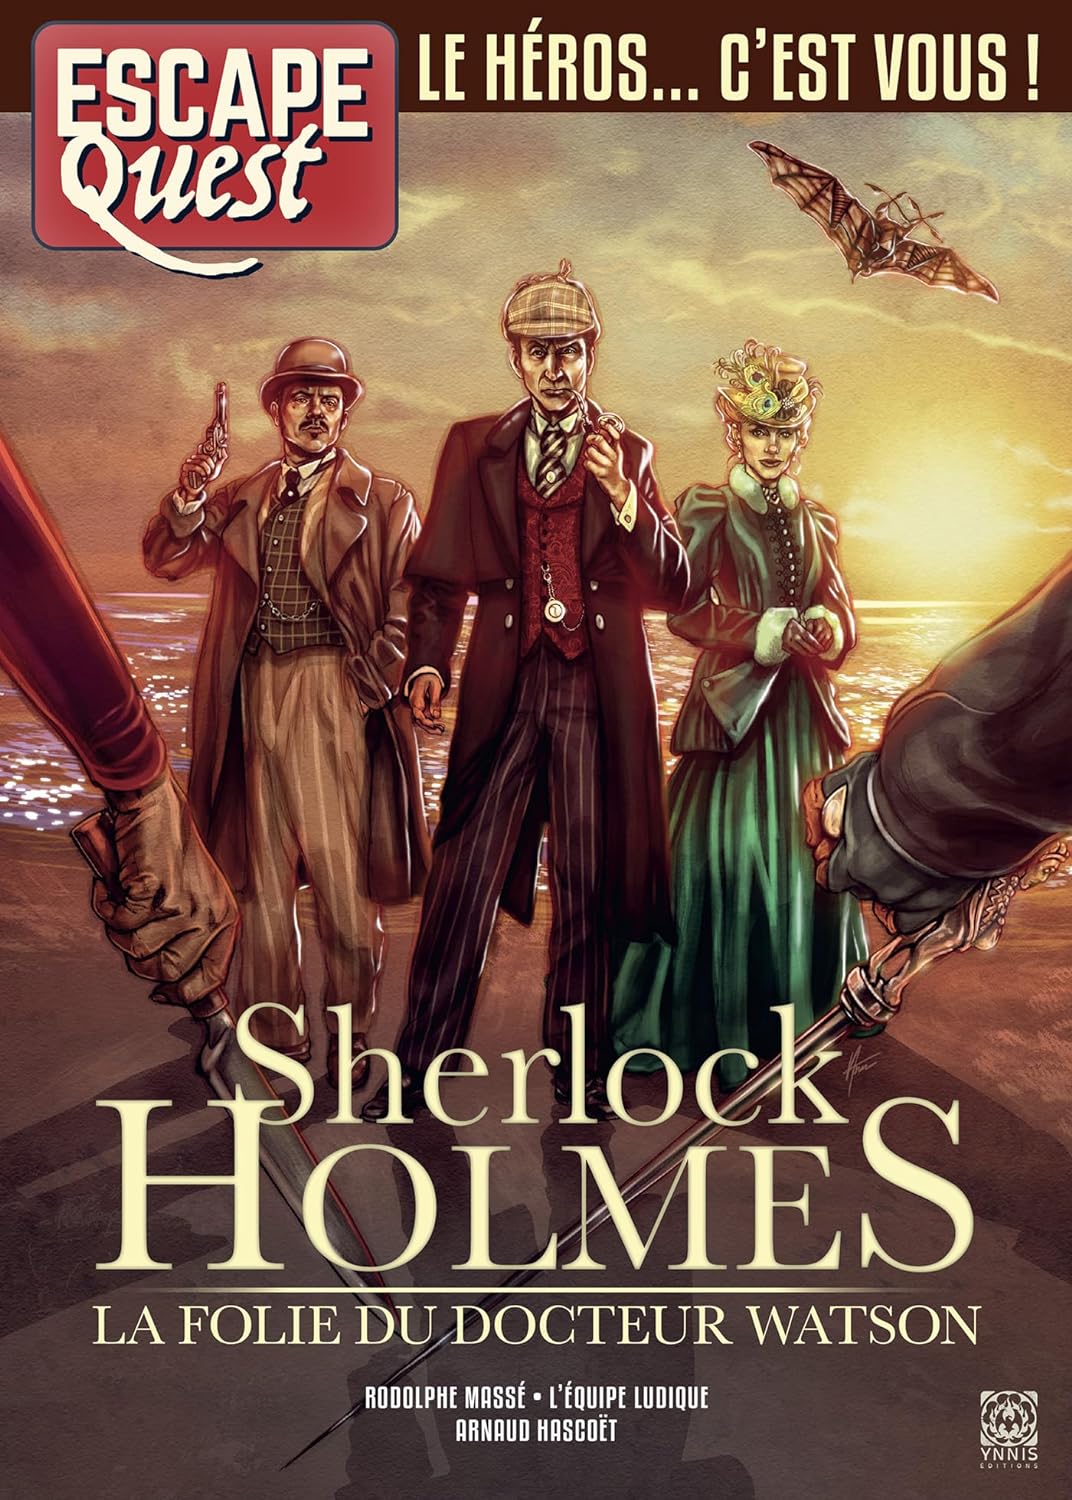 Escape Quest - Sherlock Holmes La folie du docteur Watson